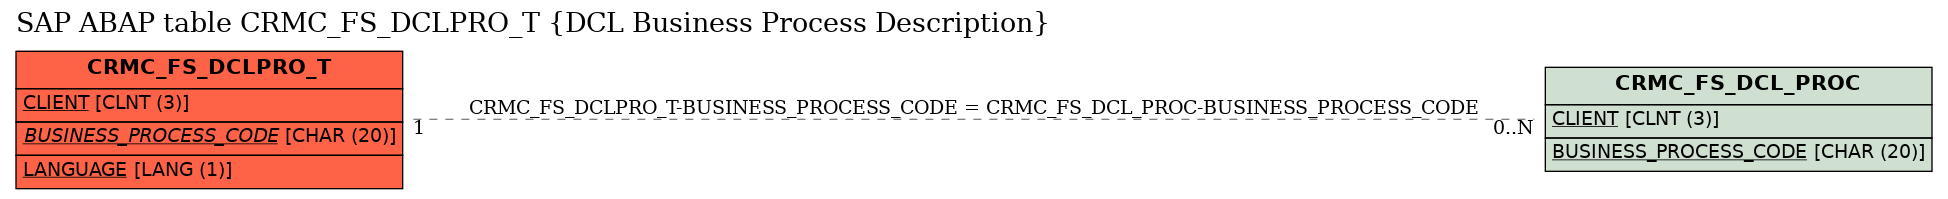 E-R Diagram for table CRMC_FS_DCLPRO_T (DCL Business Process Description)